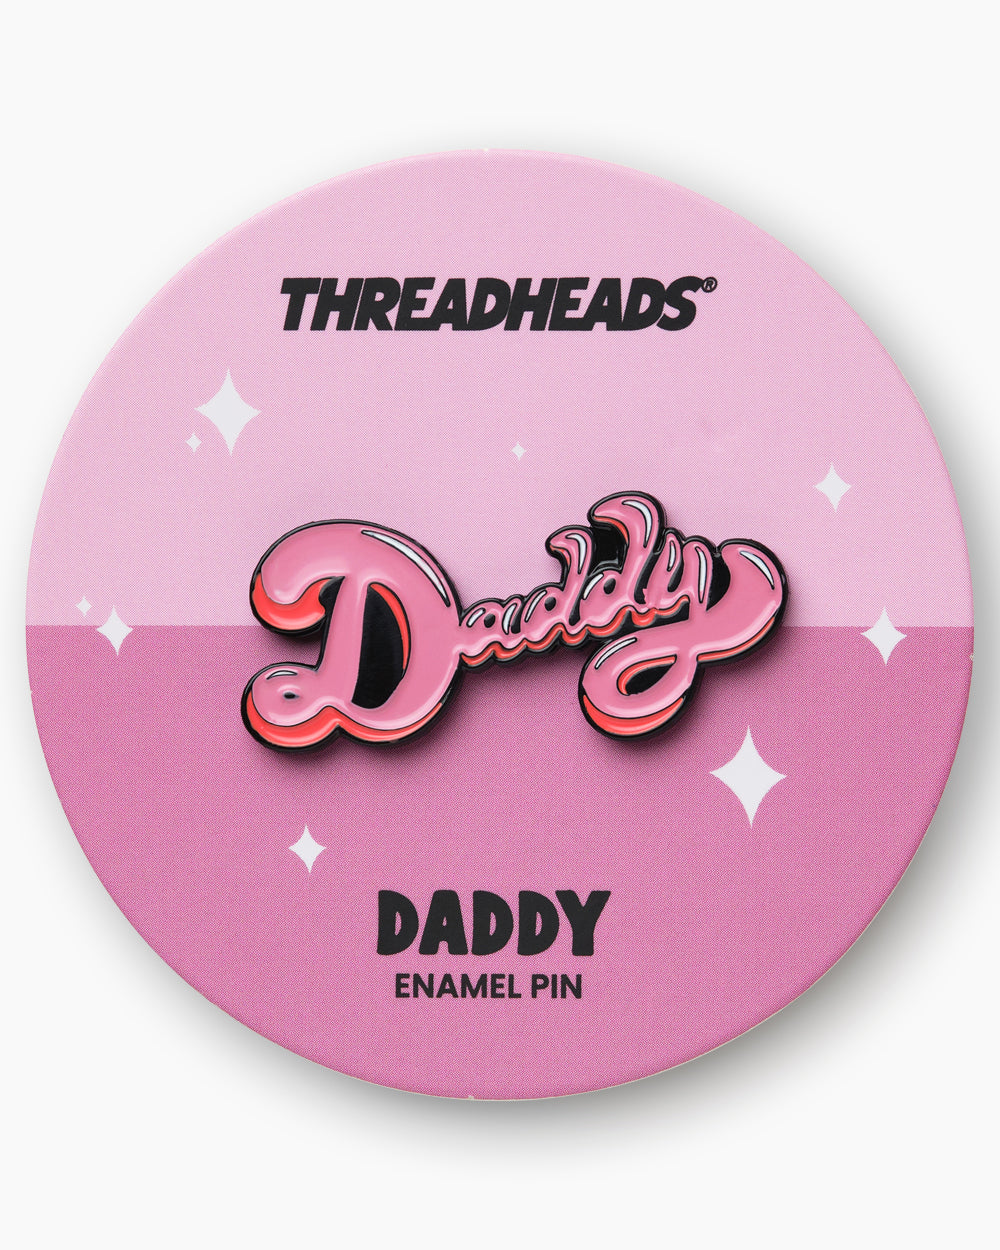 Daddy Enamel Pin | Threadheads Exclusive